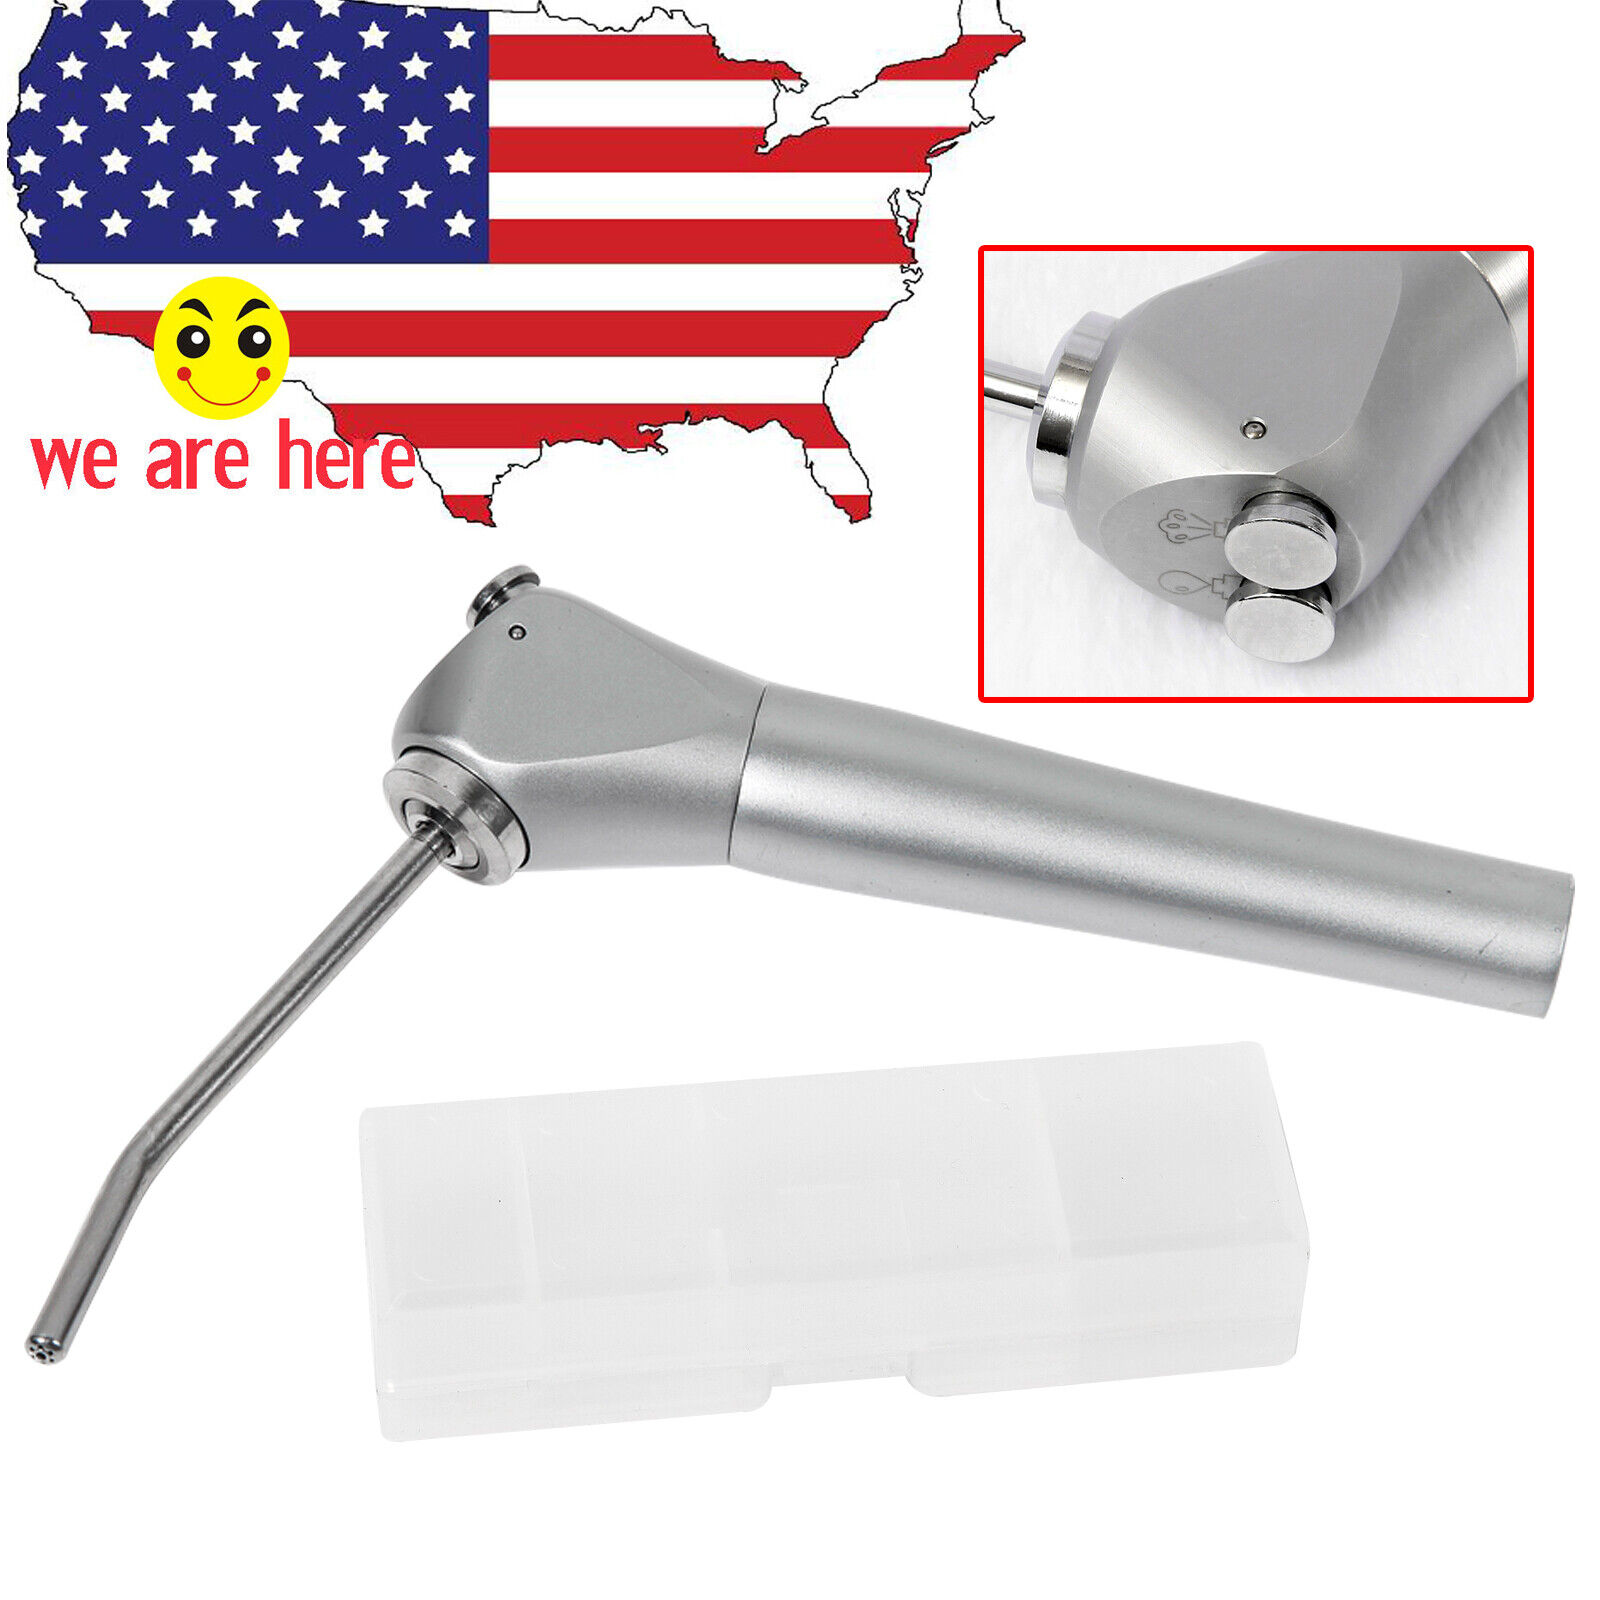 SKYSEA Lot Dental 3 Way Air Water Spray Triple Syringe Handpiece / Nozzles USPS